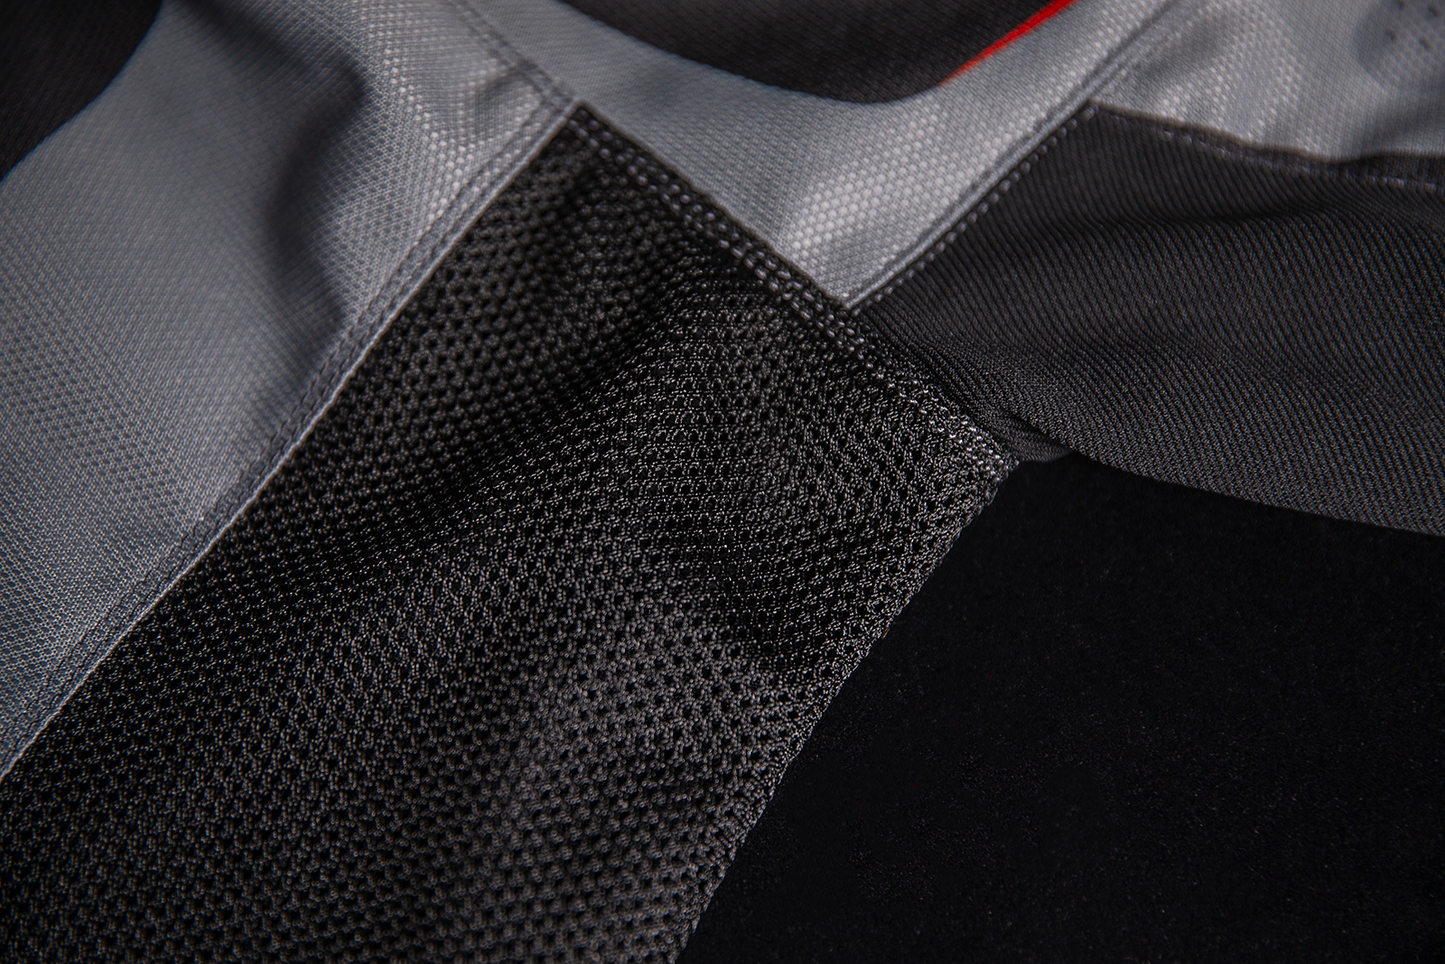 ICON Hooligan Ultrabolt Jacket - Black/Gray/Red - Large 2820-5530